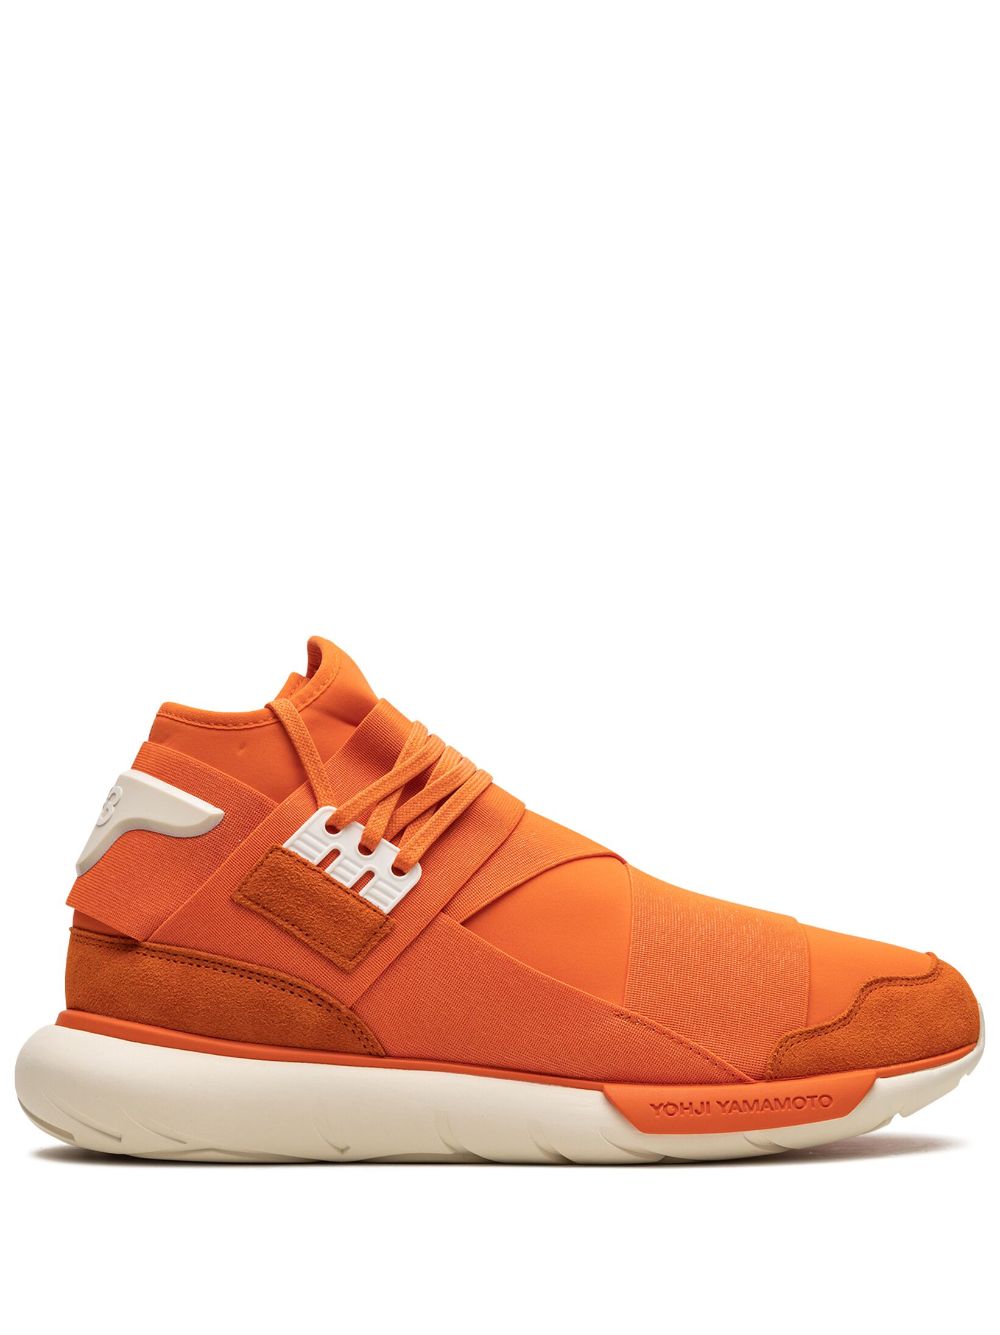 Adidas Originals X Y-3 Qasa High-top Sneakers In Orange